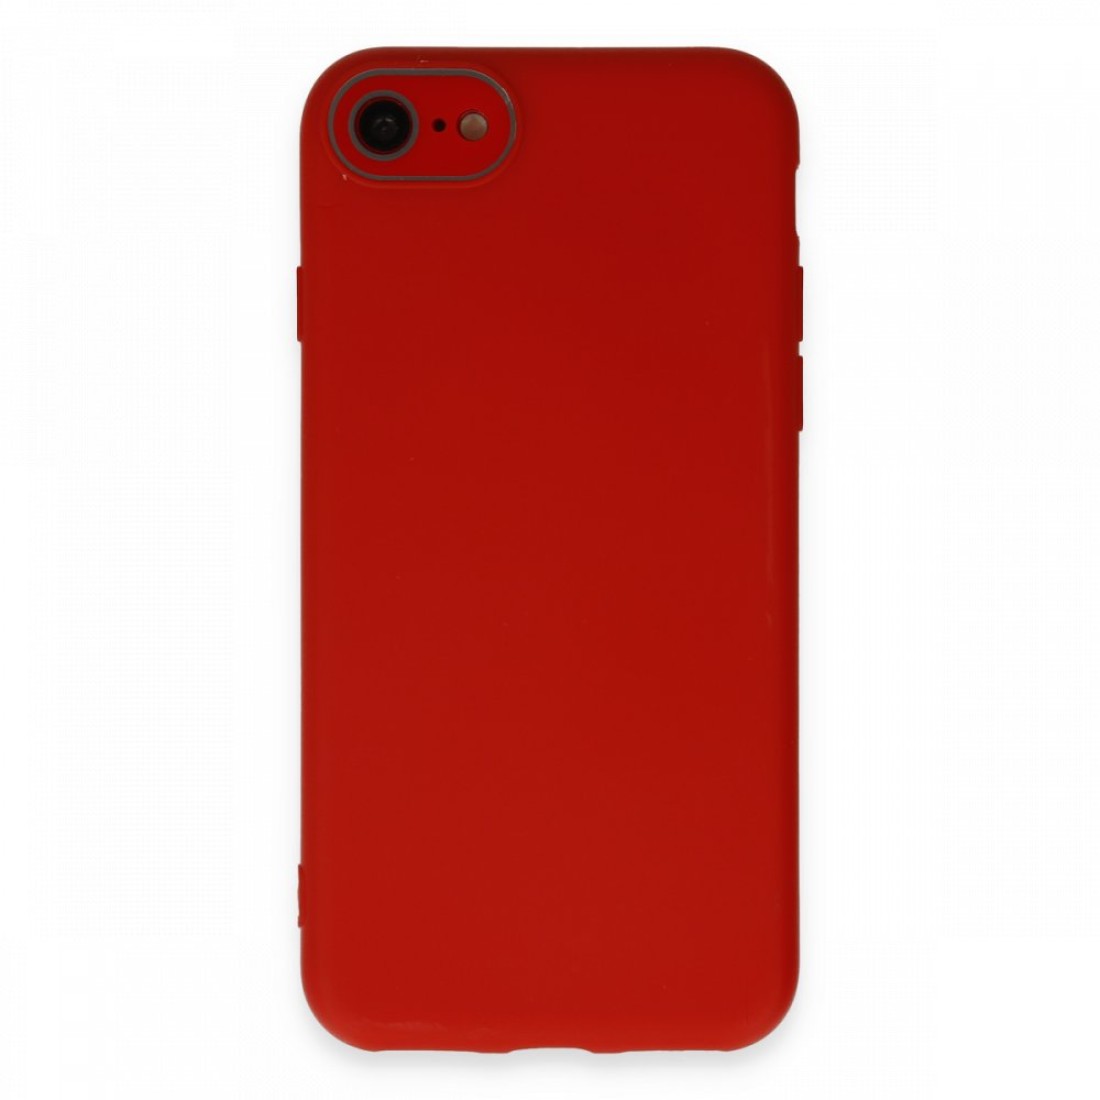 Apple iPhone 7 Kılıf Lansman Glass Kapak - Kırmızı